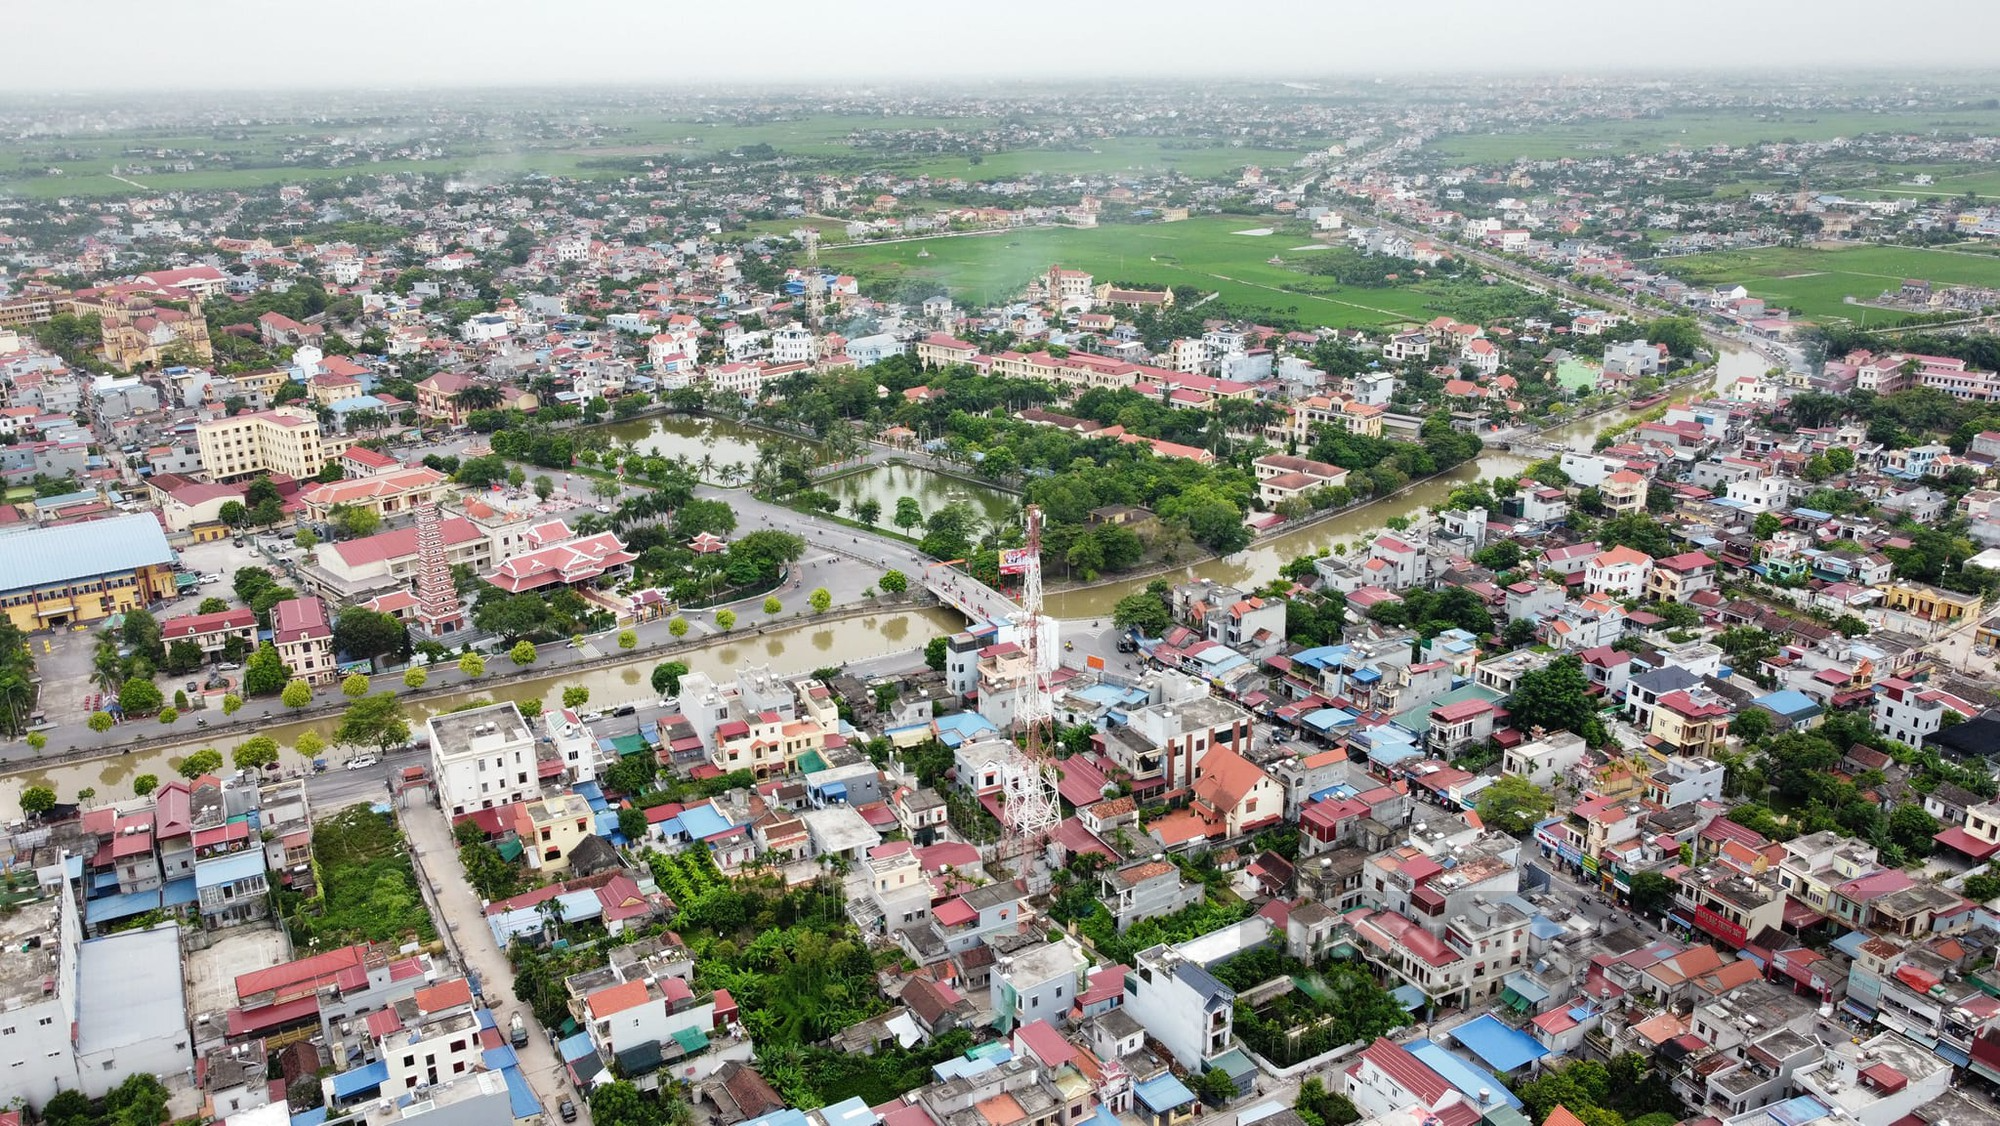 Tỉnh Nam Định đã có 18 xã được công nhận là xã nông thôn mới kiểu mẫu, đó là những xã nào? - Ảnh 5.